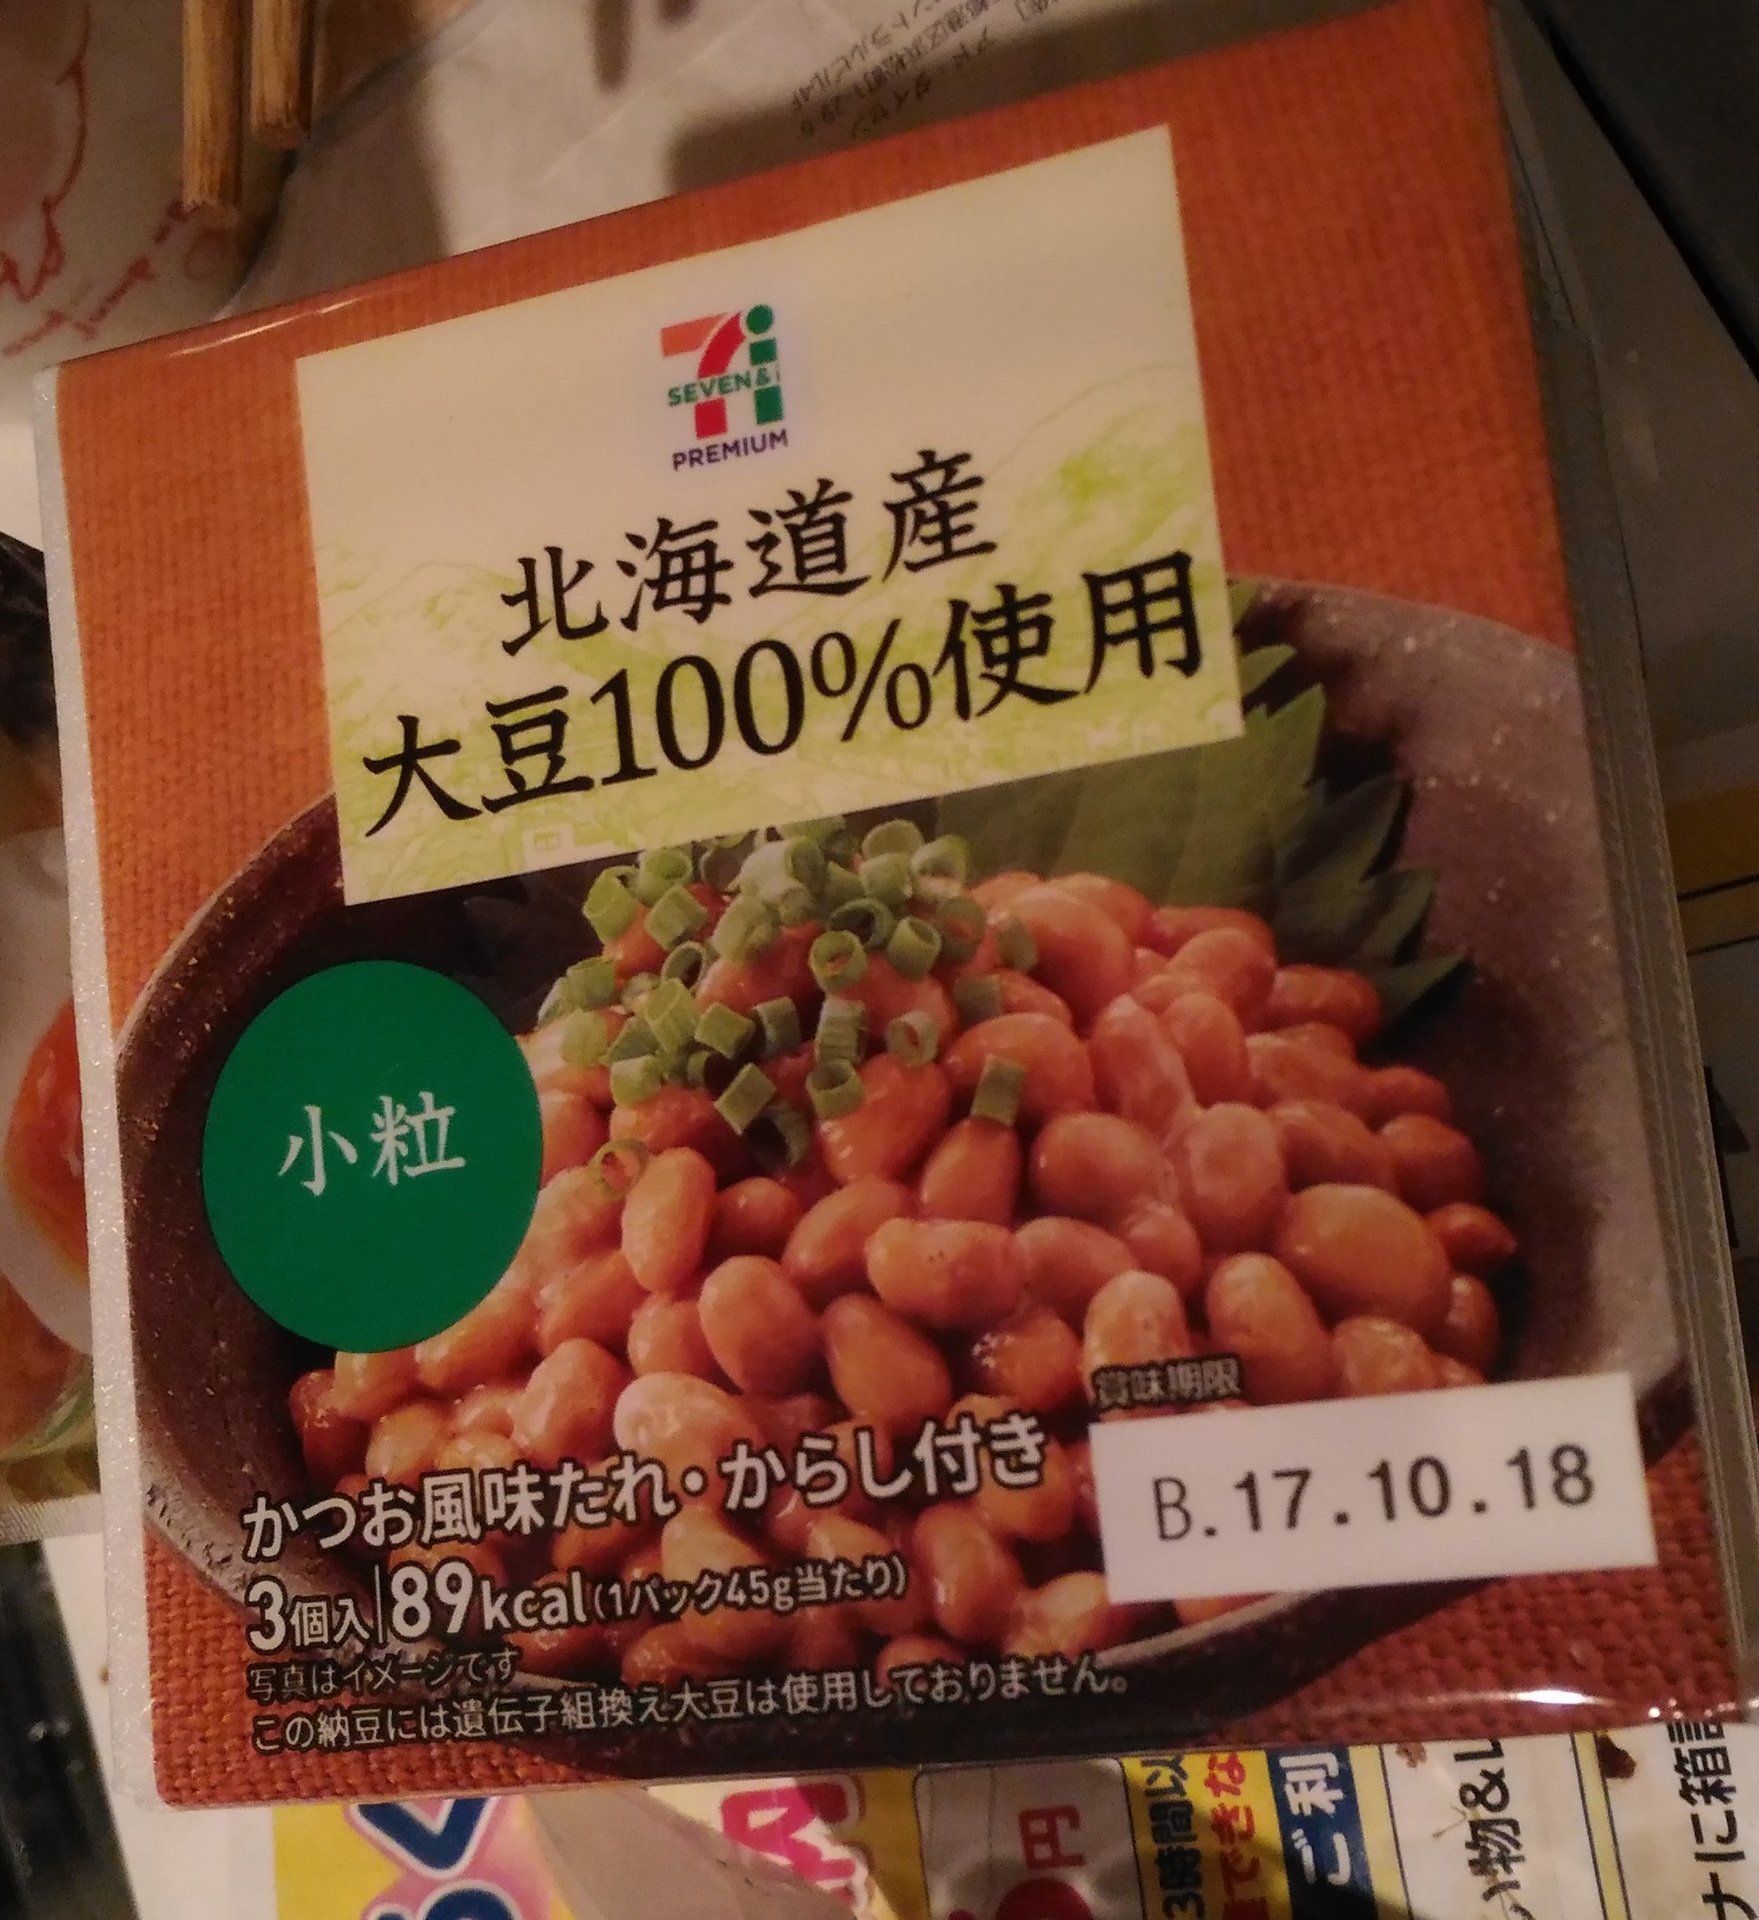 セブンプレミアム 北海道産大豆100 使用小粒納豆3p新商品 値段は